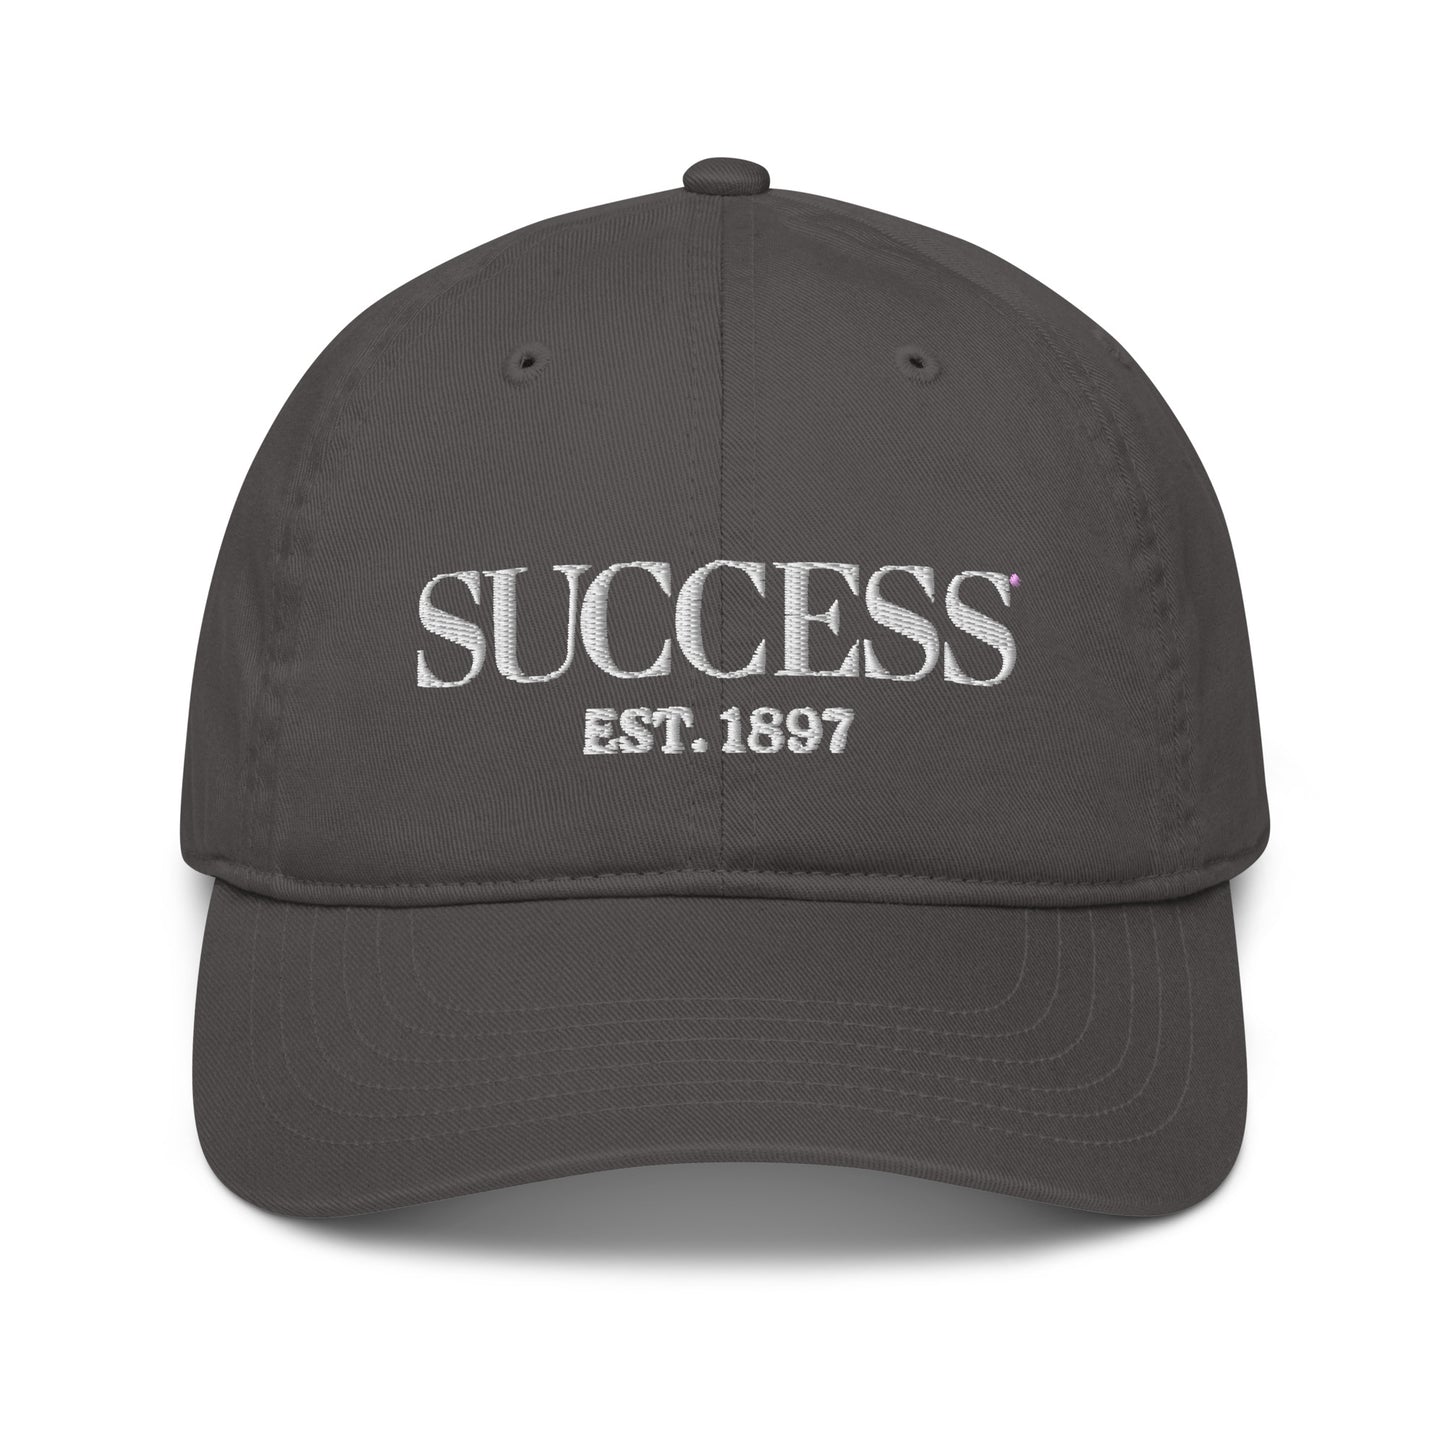 SUCCESS Est. 1897 organic dad hat